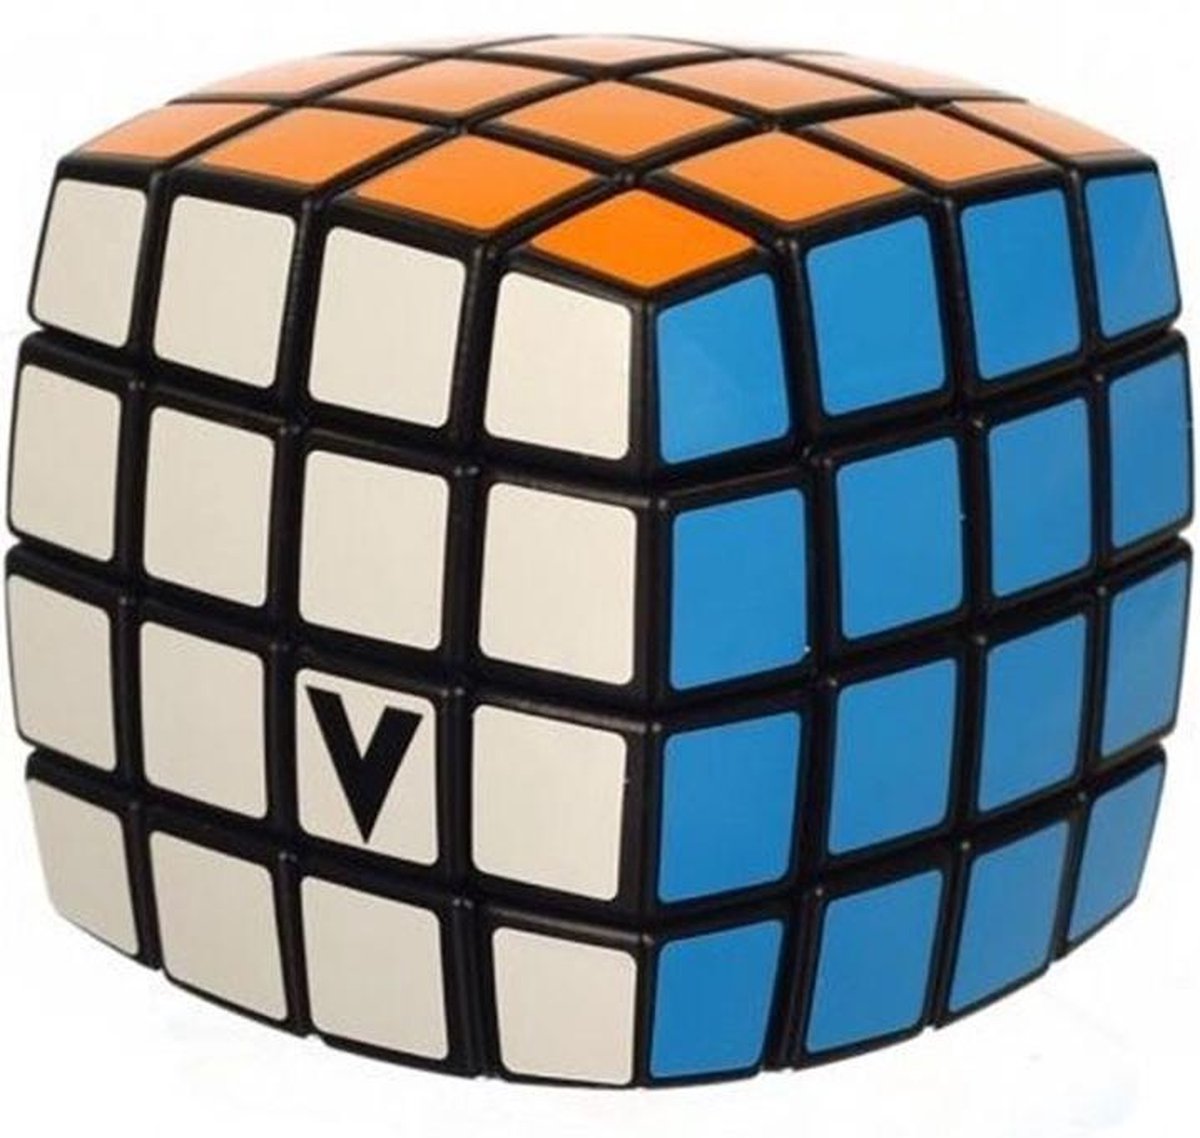 V-kubus 4 pillow - V-cube 4 pillow